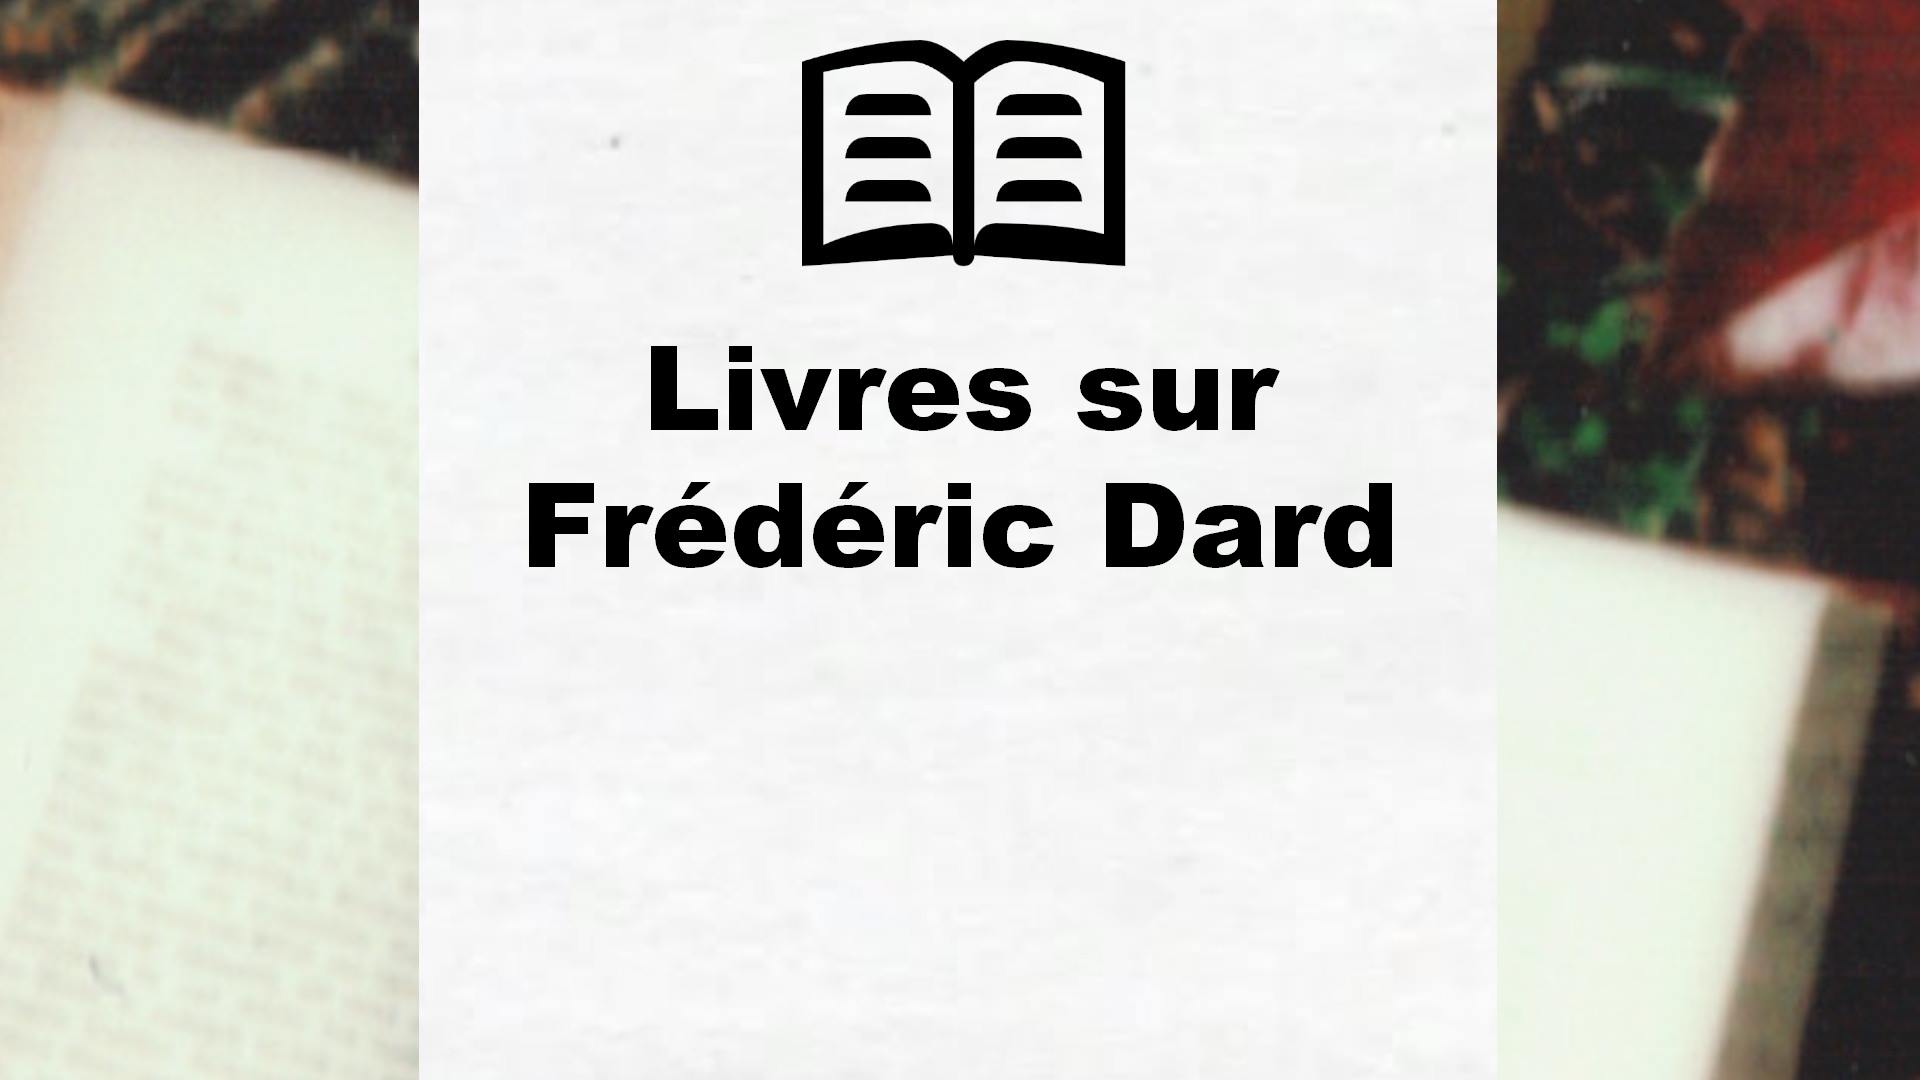 Livres sur Frédéric Dard